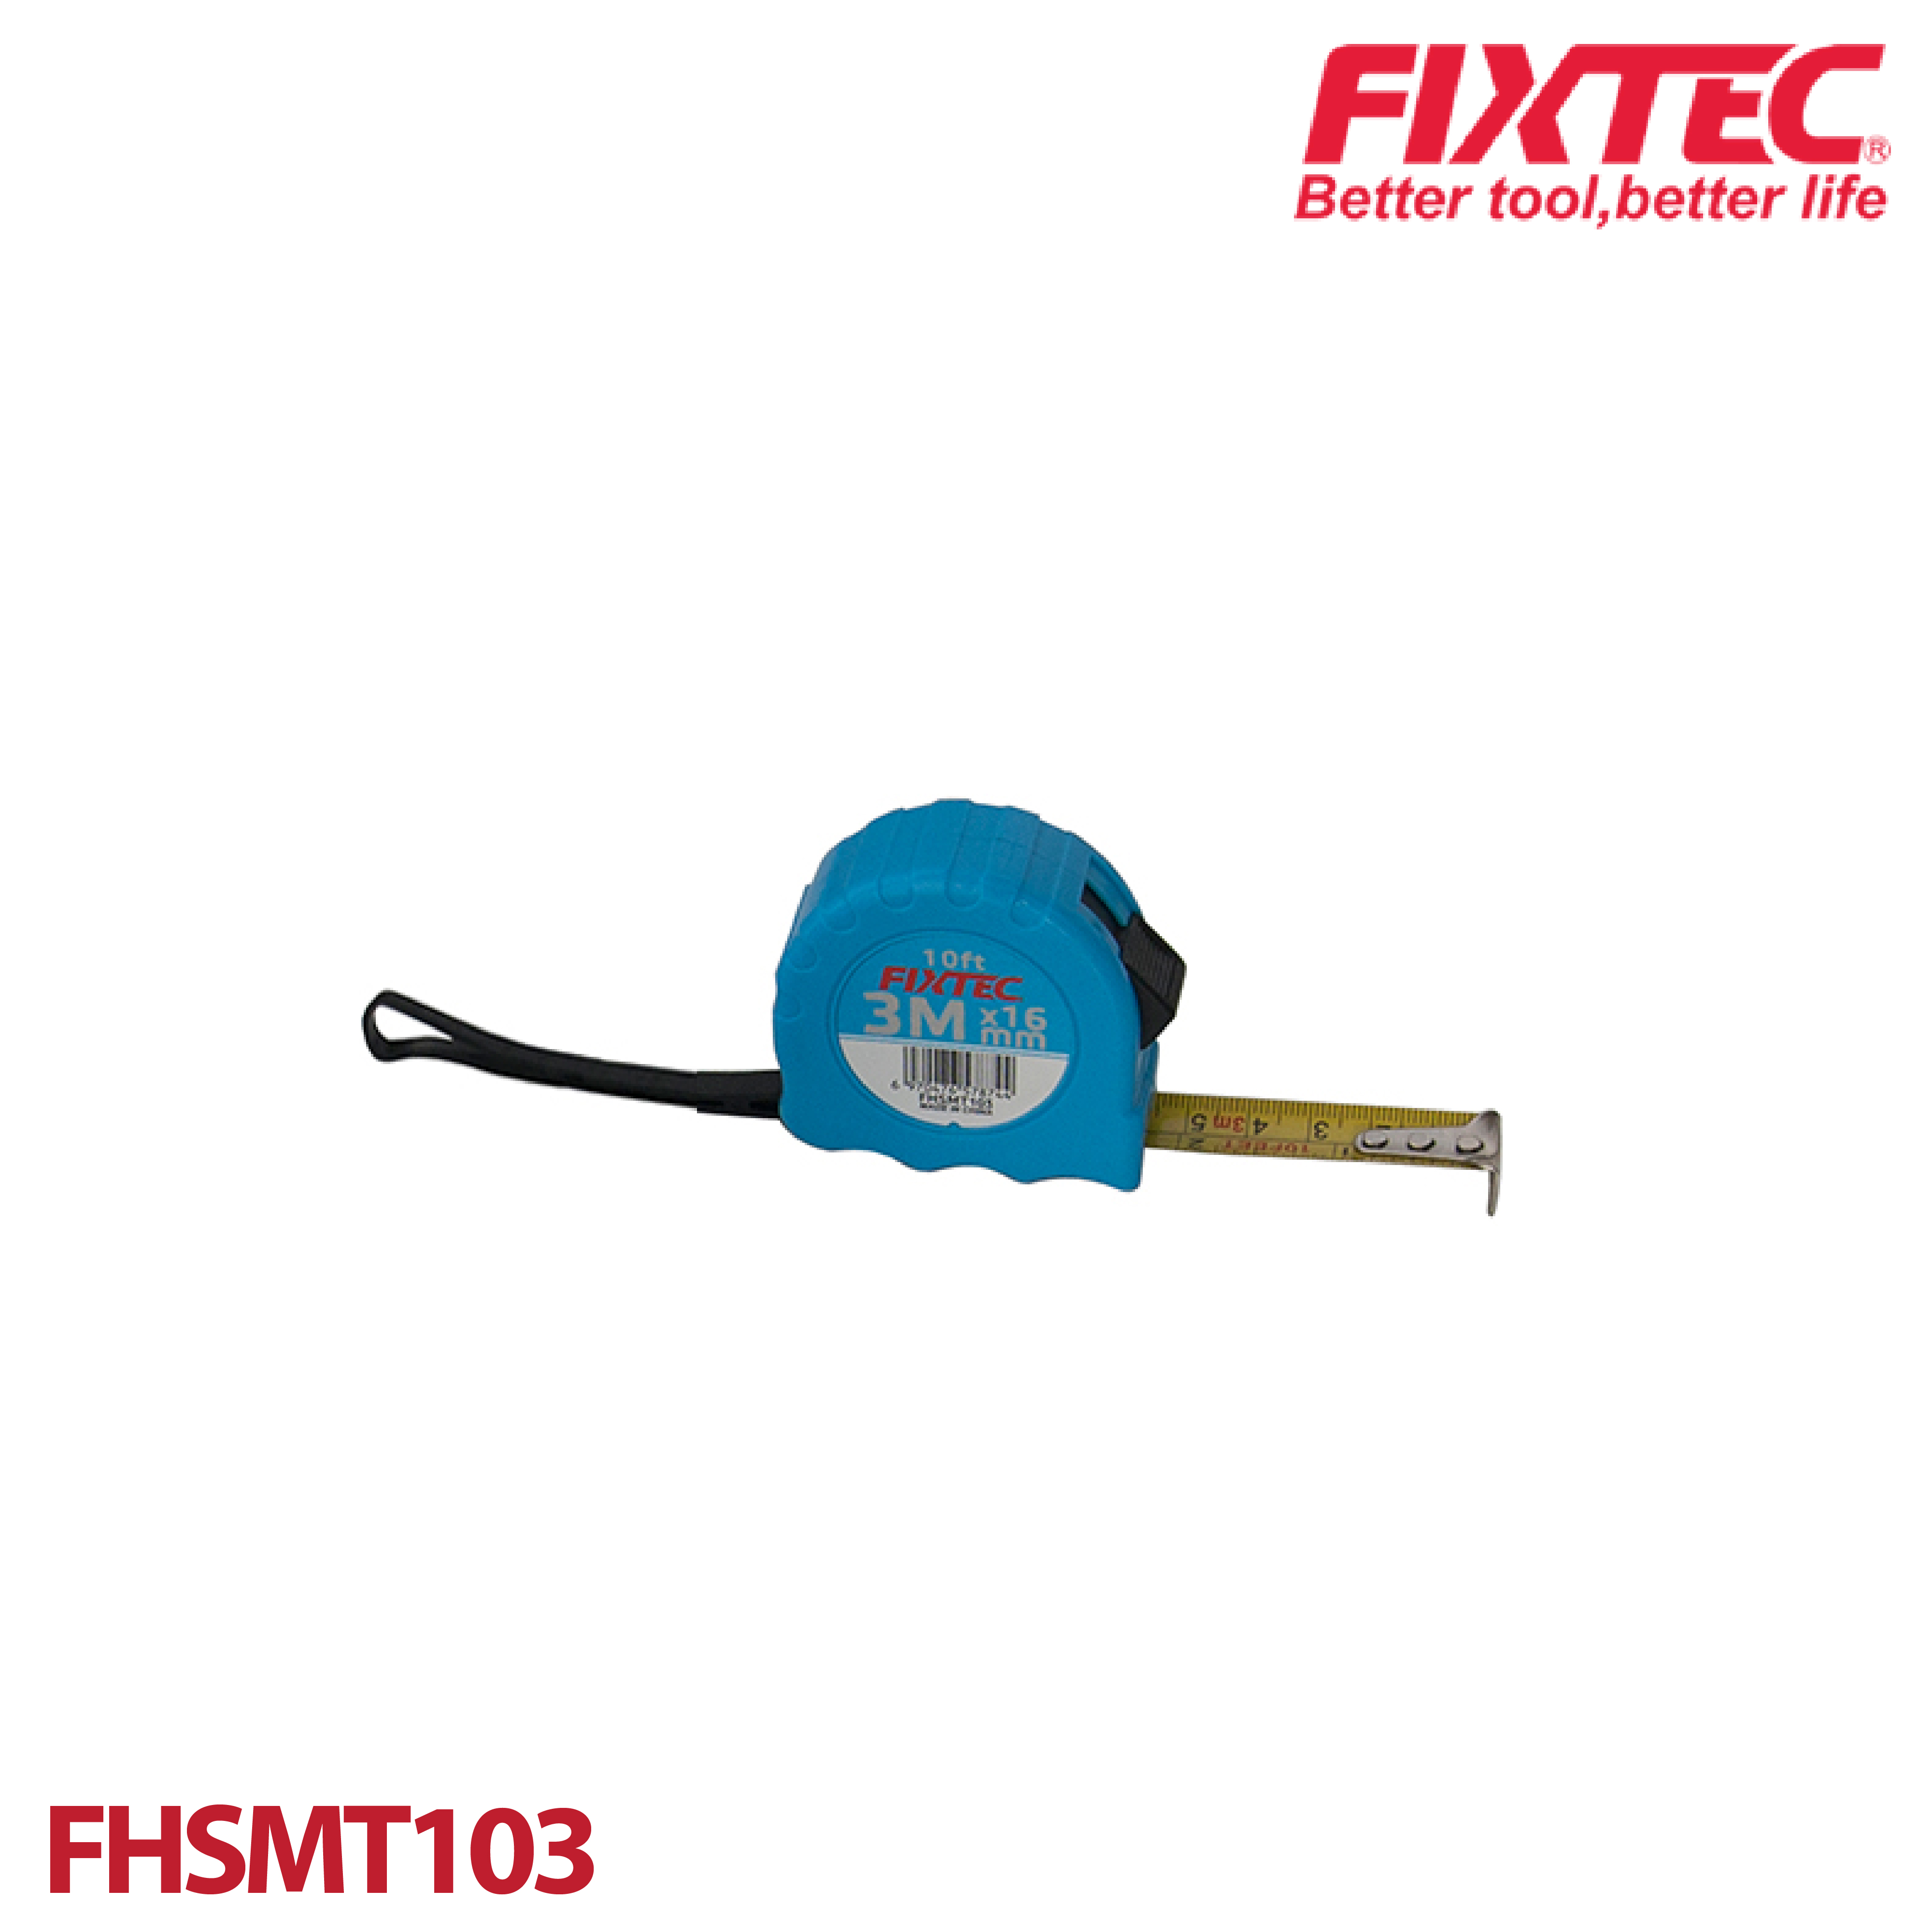 ตลับเมตร 3mx16mm FIXTEC FHSMT103